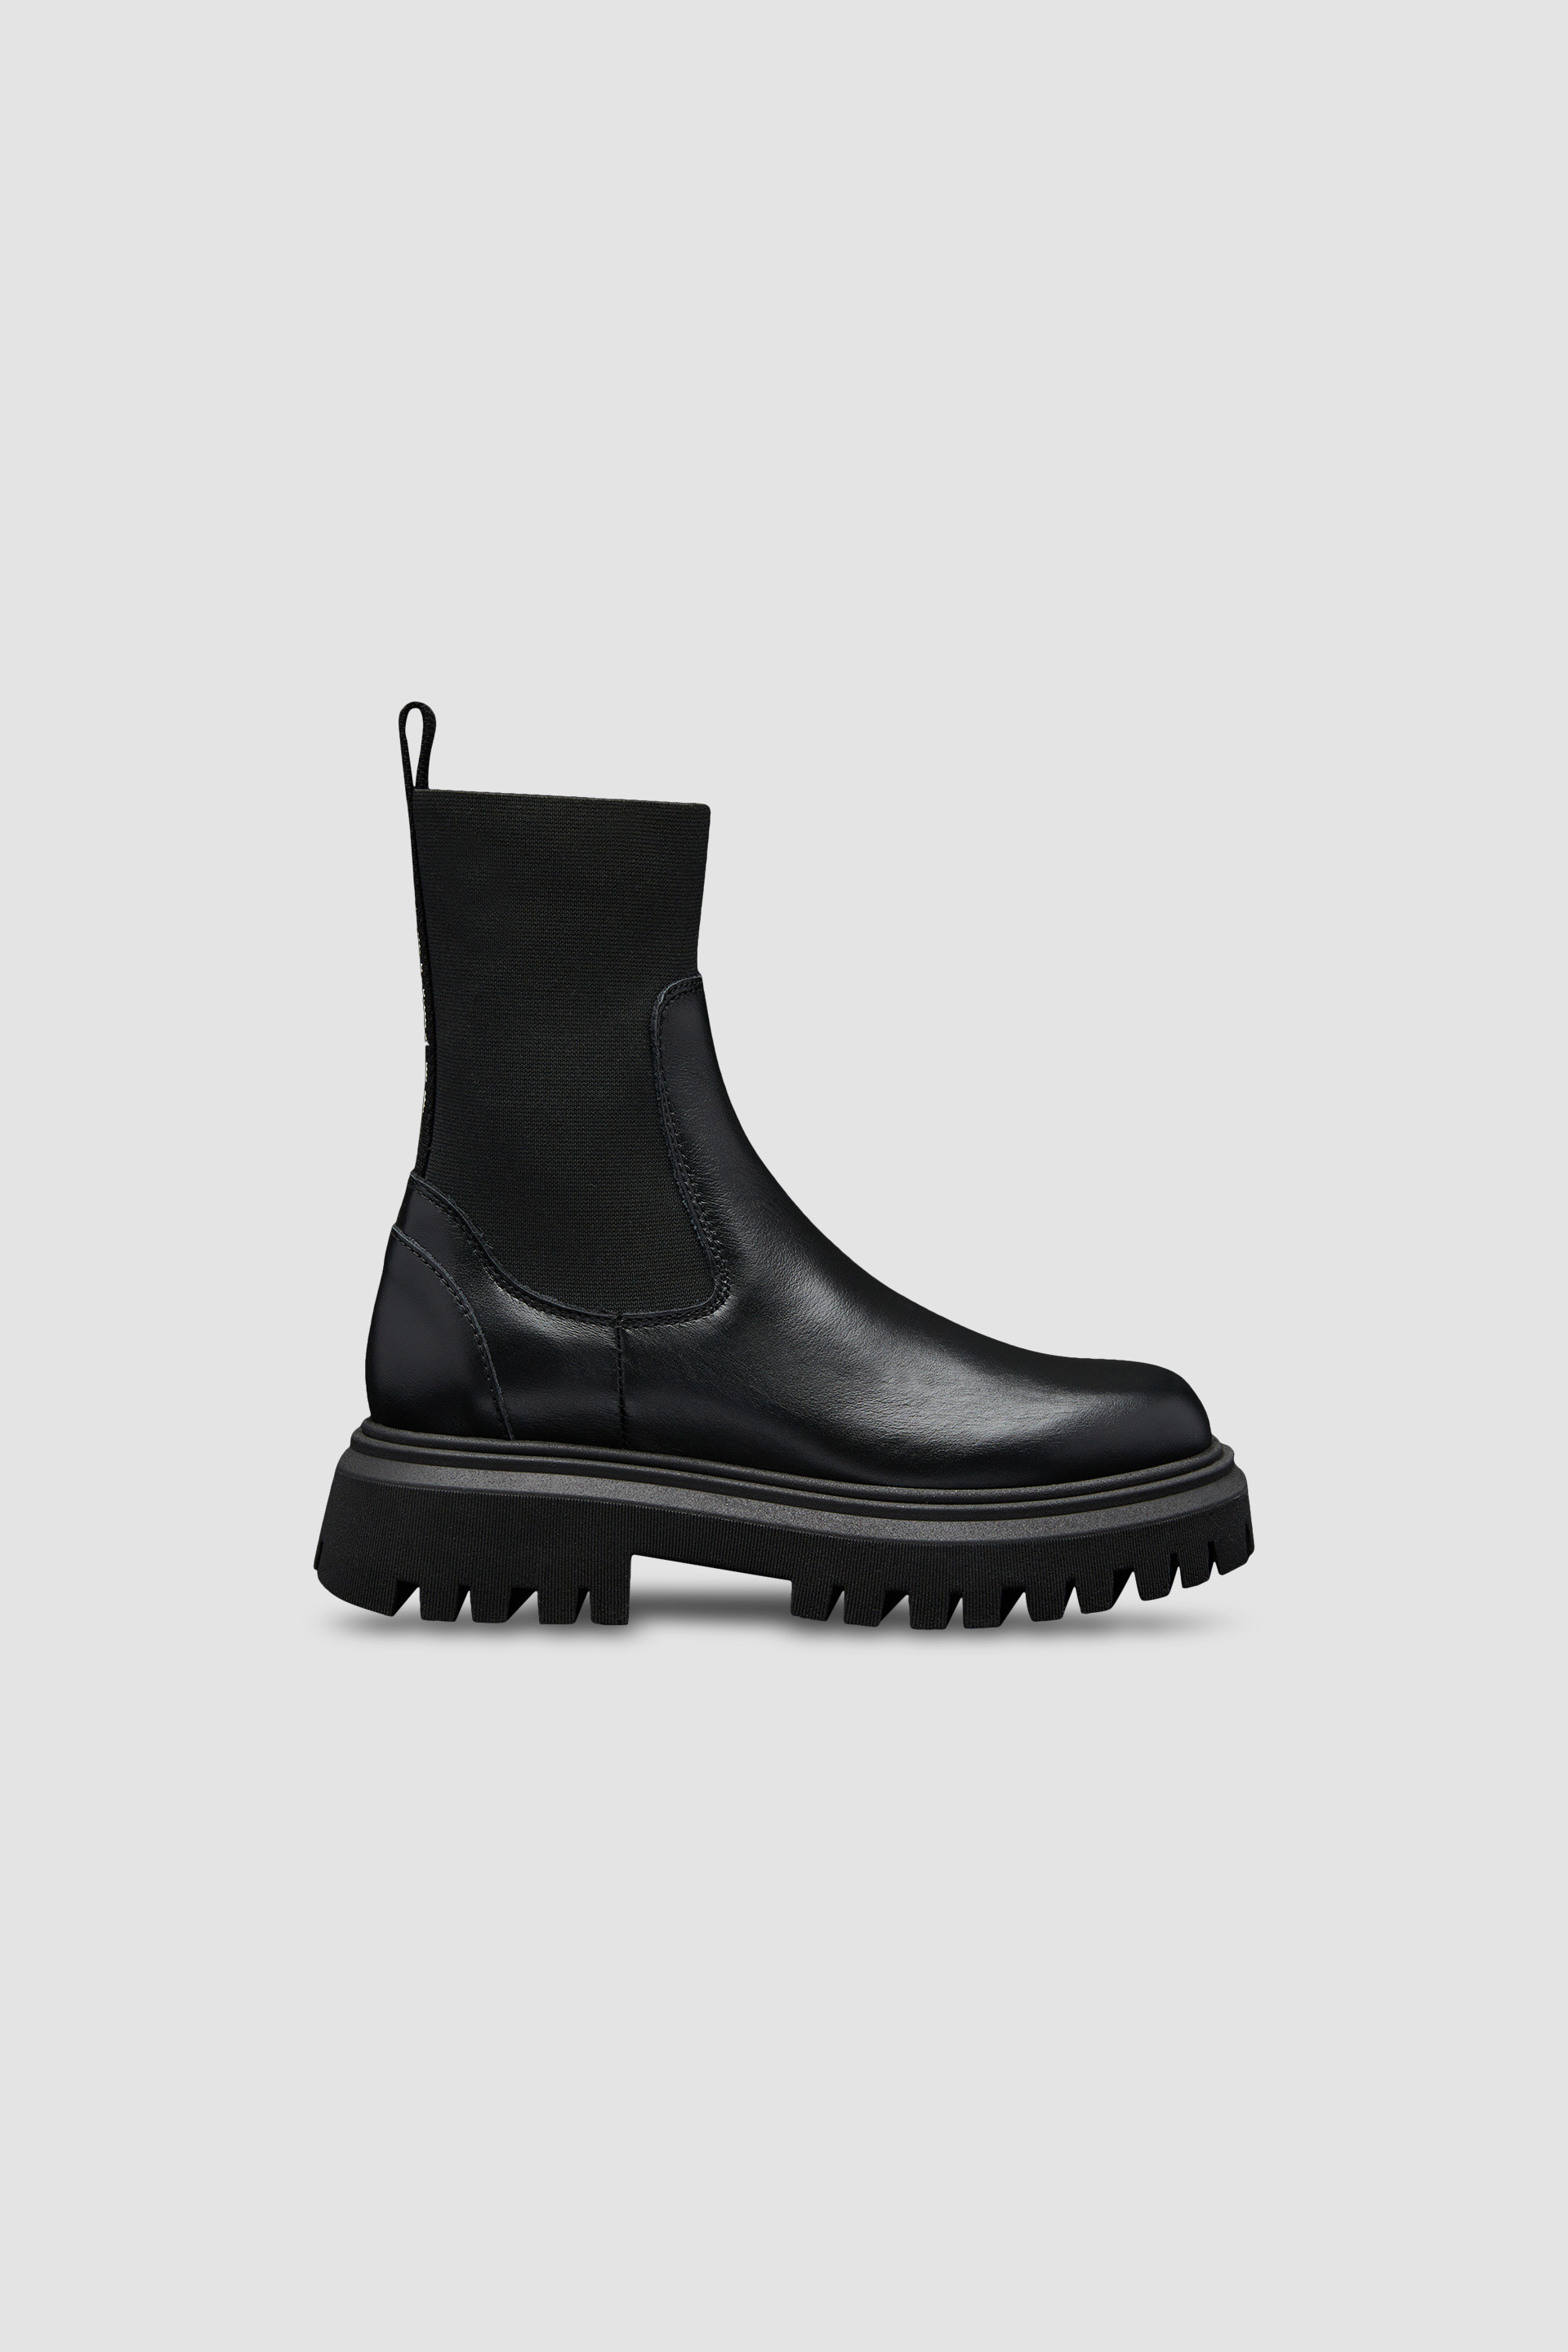 Black Petit Neue Chelsea Boots - Accessories & Shoes for Children ...